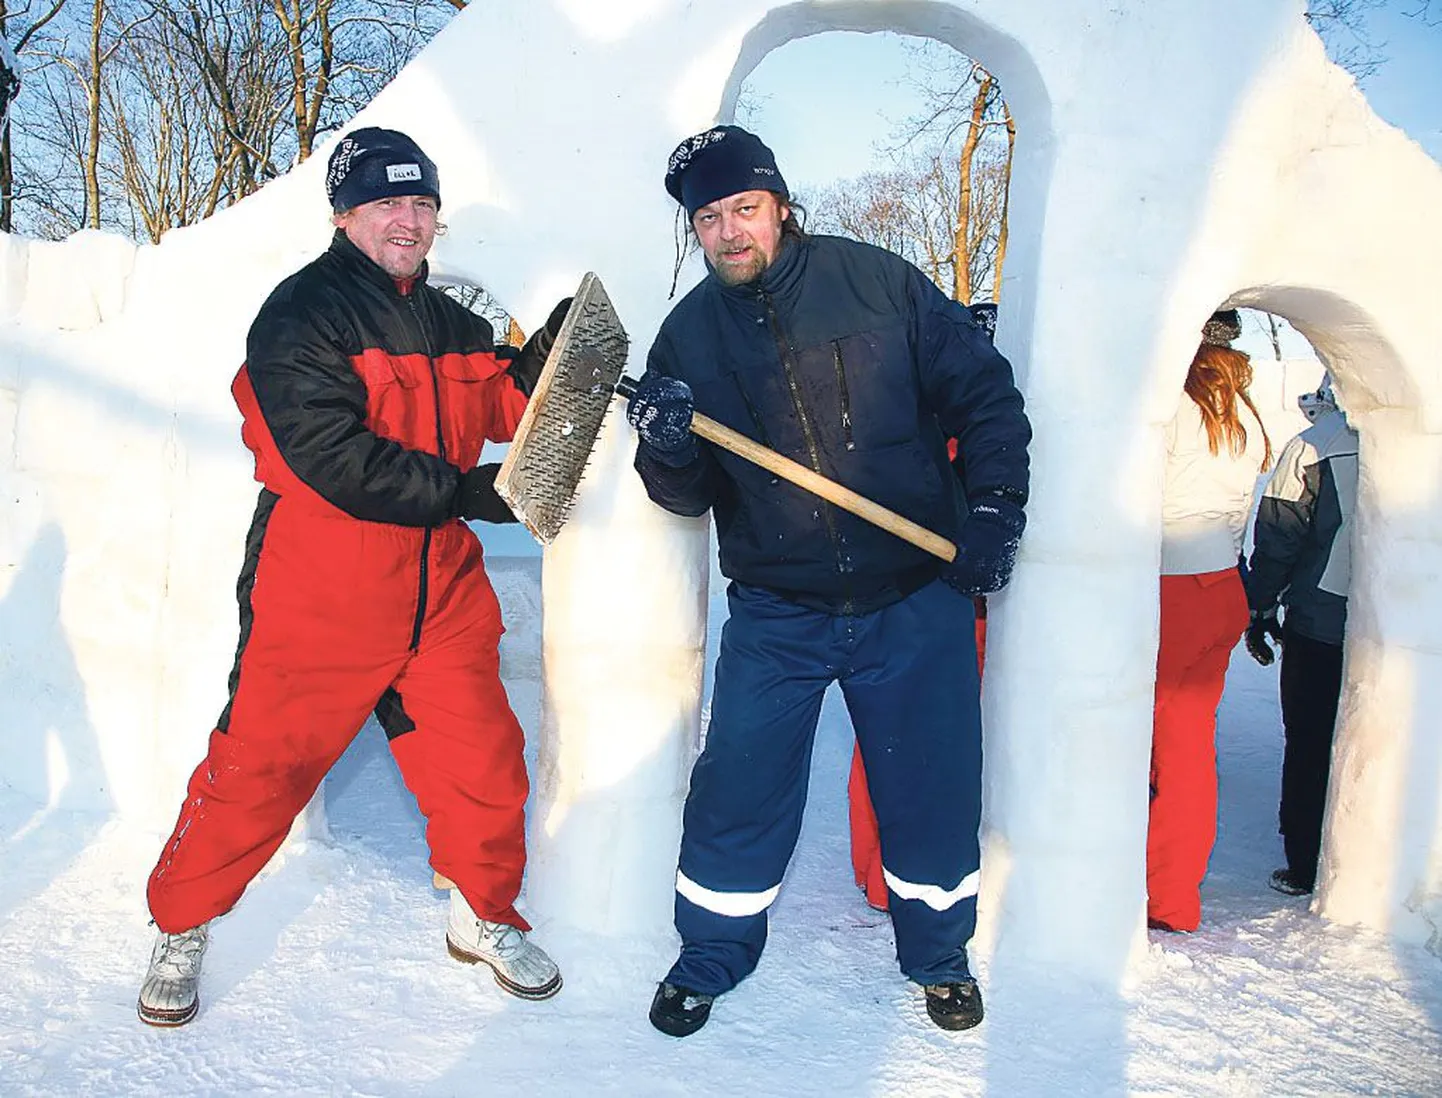 Üllar Kallau (vasakul) ja Rait Pärg näitasid oma töövahendeid, riivi ja meislit, mis aitasid neil vormida lund ja jääd täpselt selliseks, nagu nad ise soovisid.